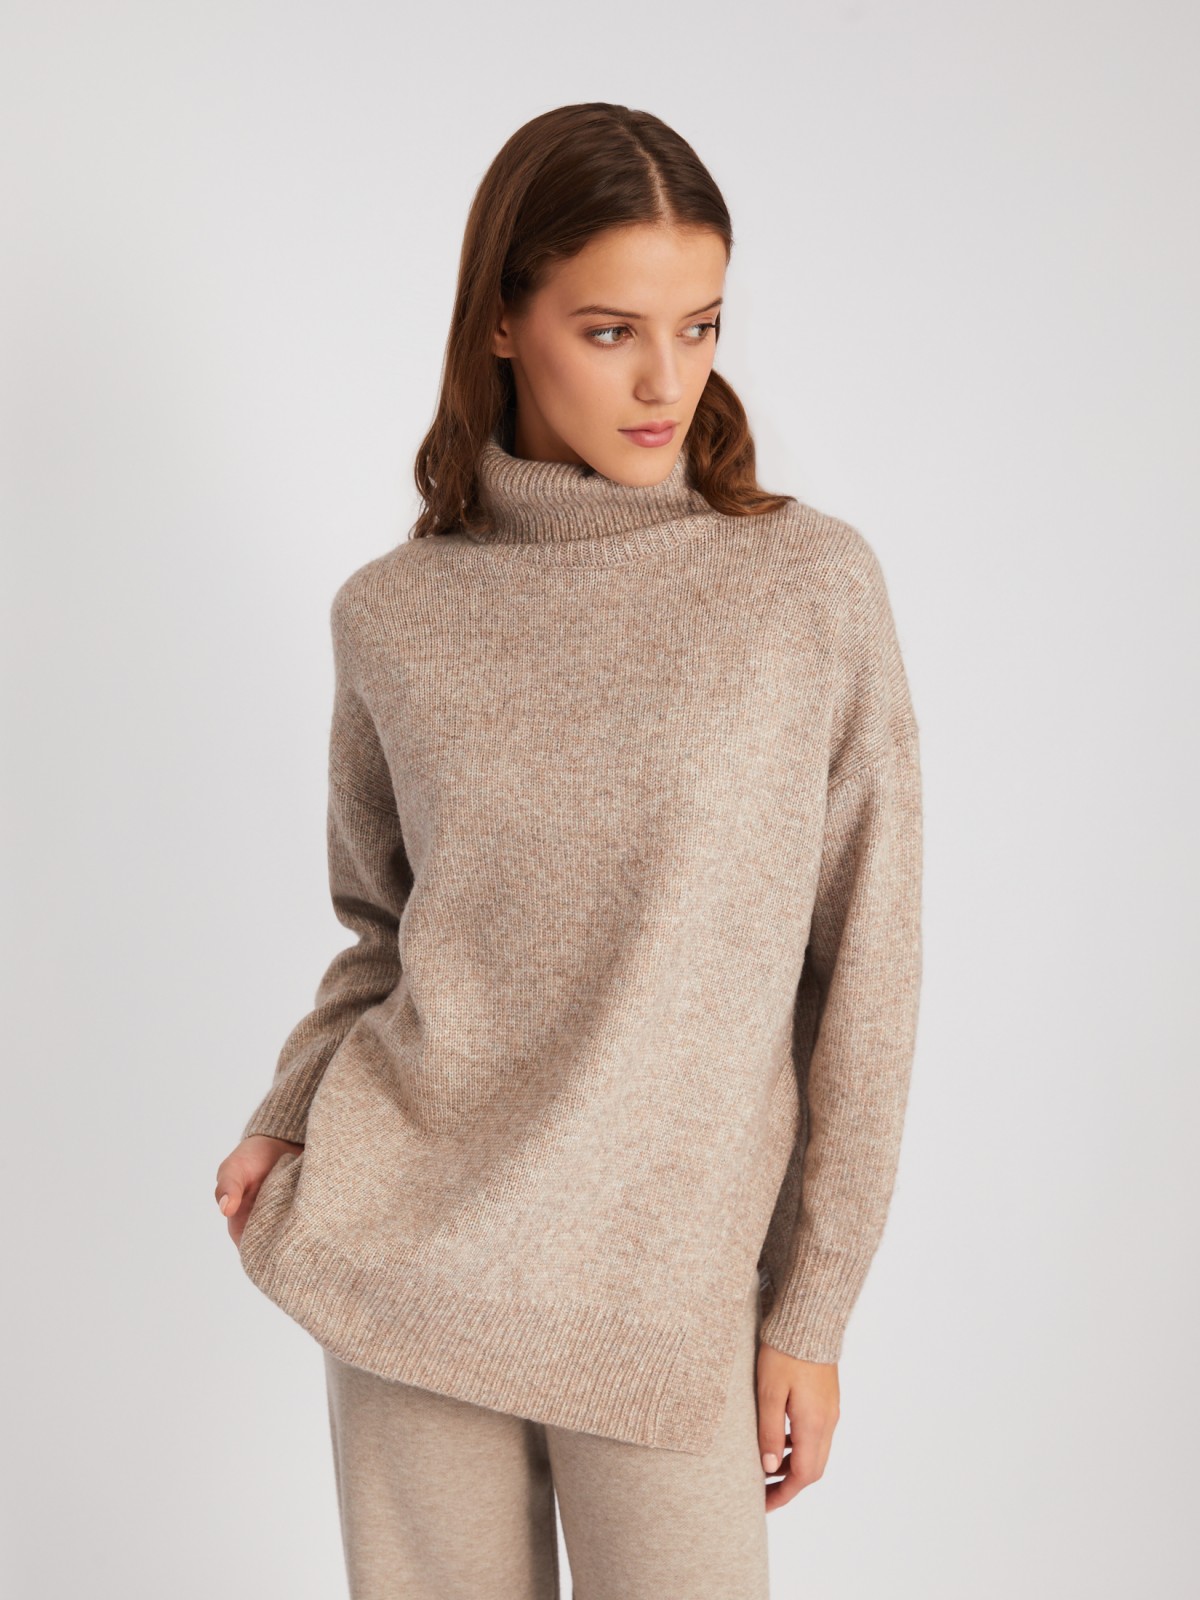 Вязаный шерстяной свитер объёмного фасона с воротником-хомутом